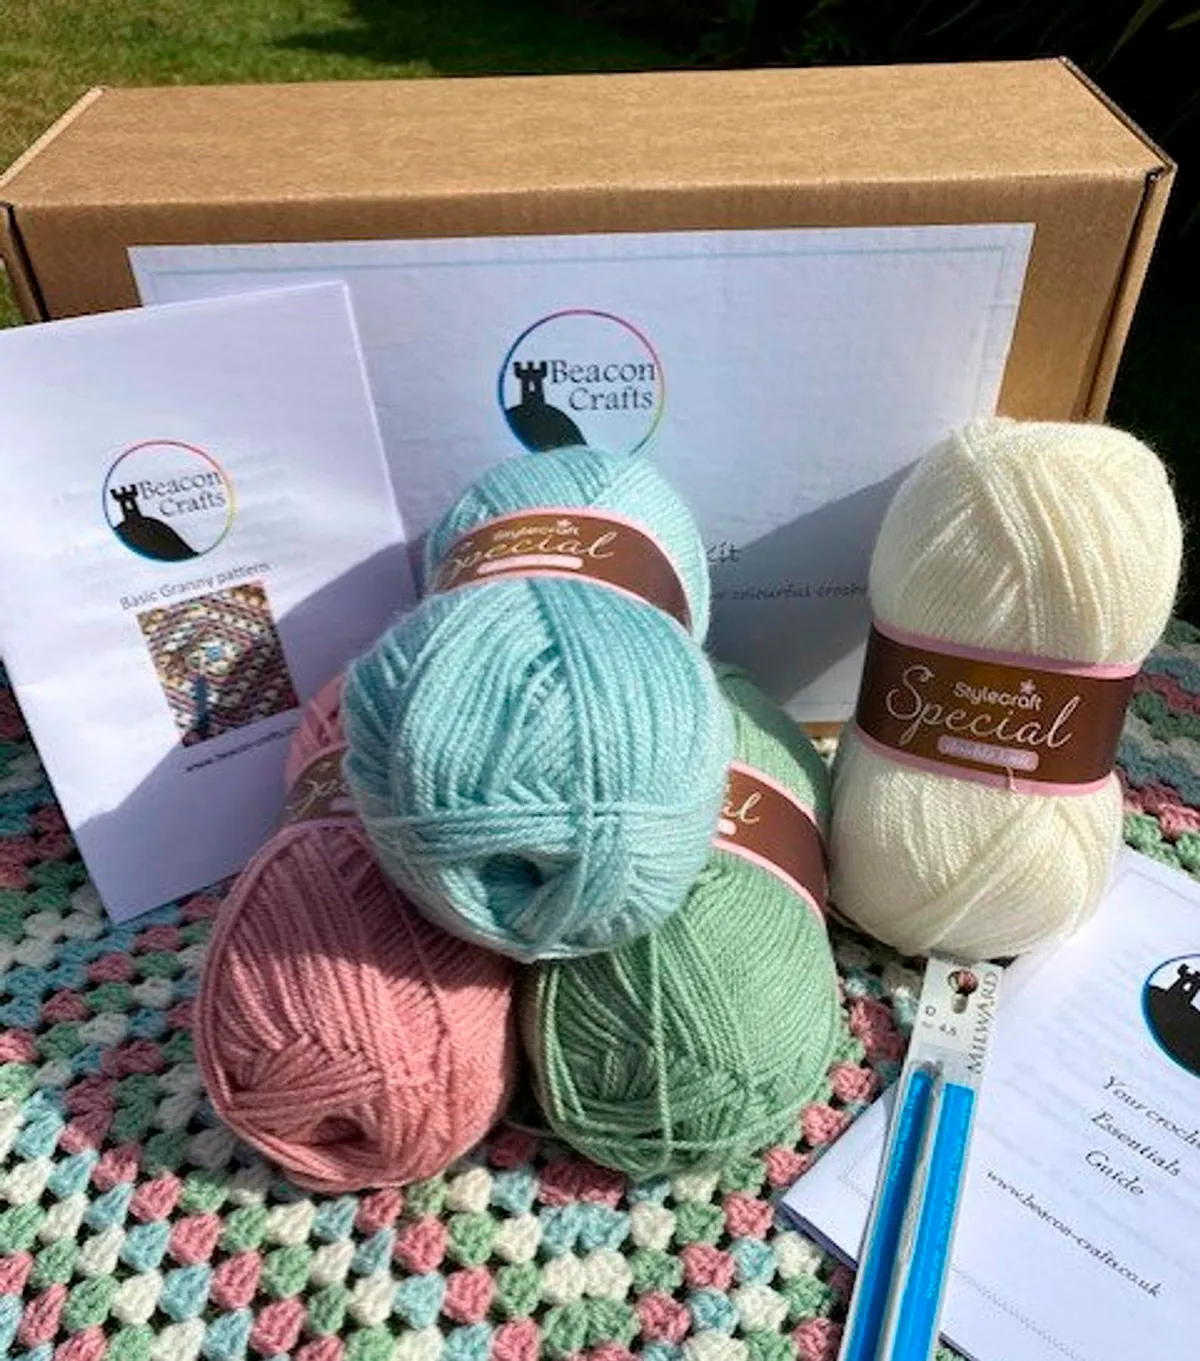 Crochet Starter Kit - everything a beginner needs - Little Conkers